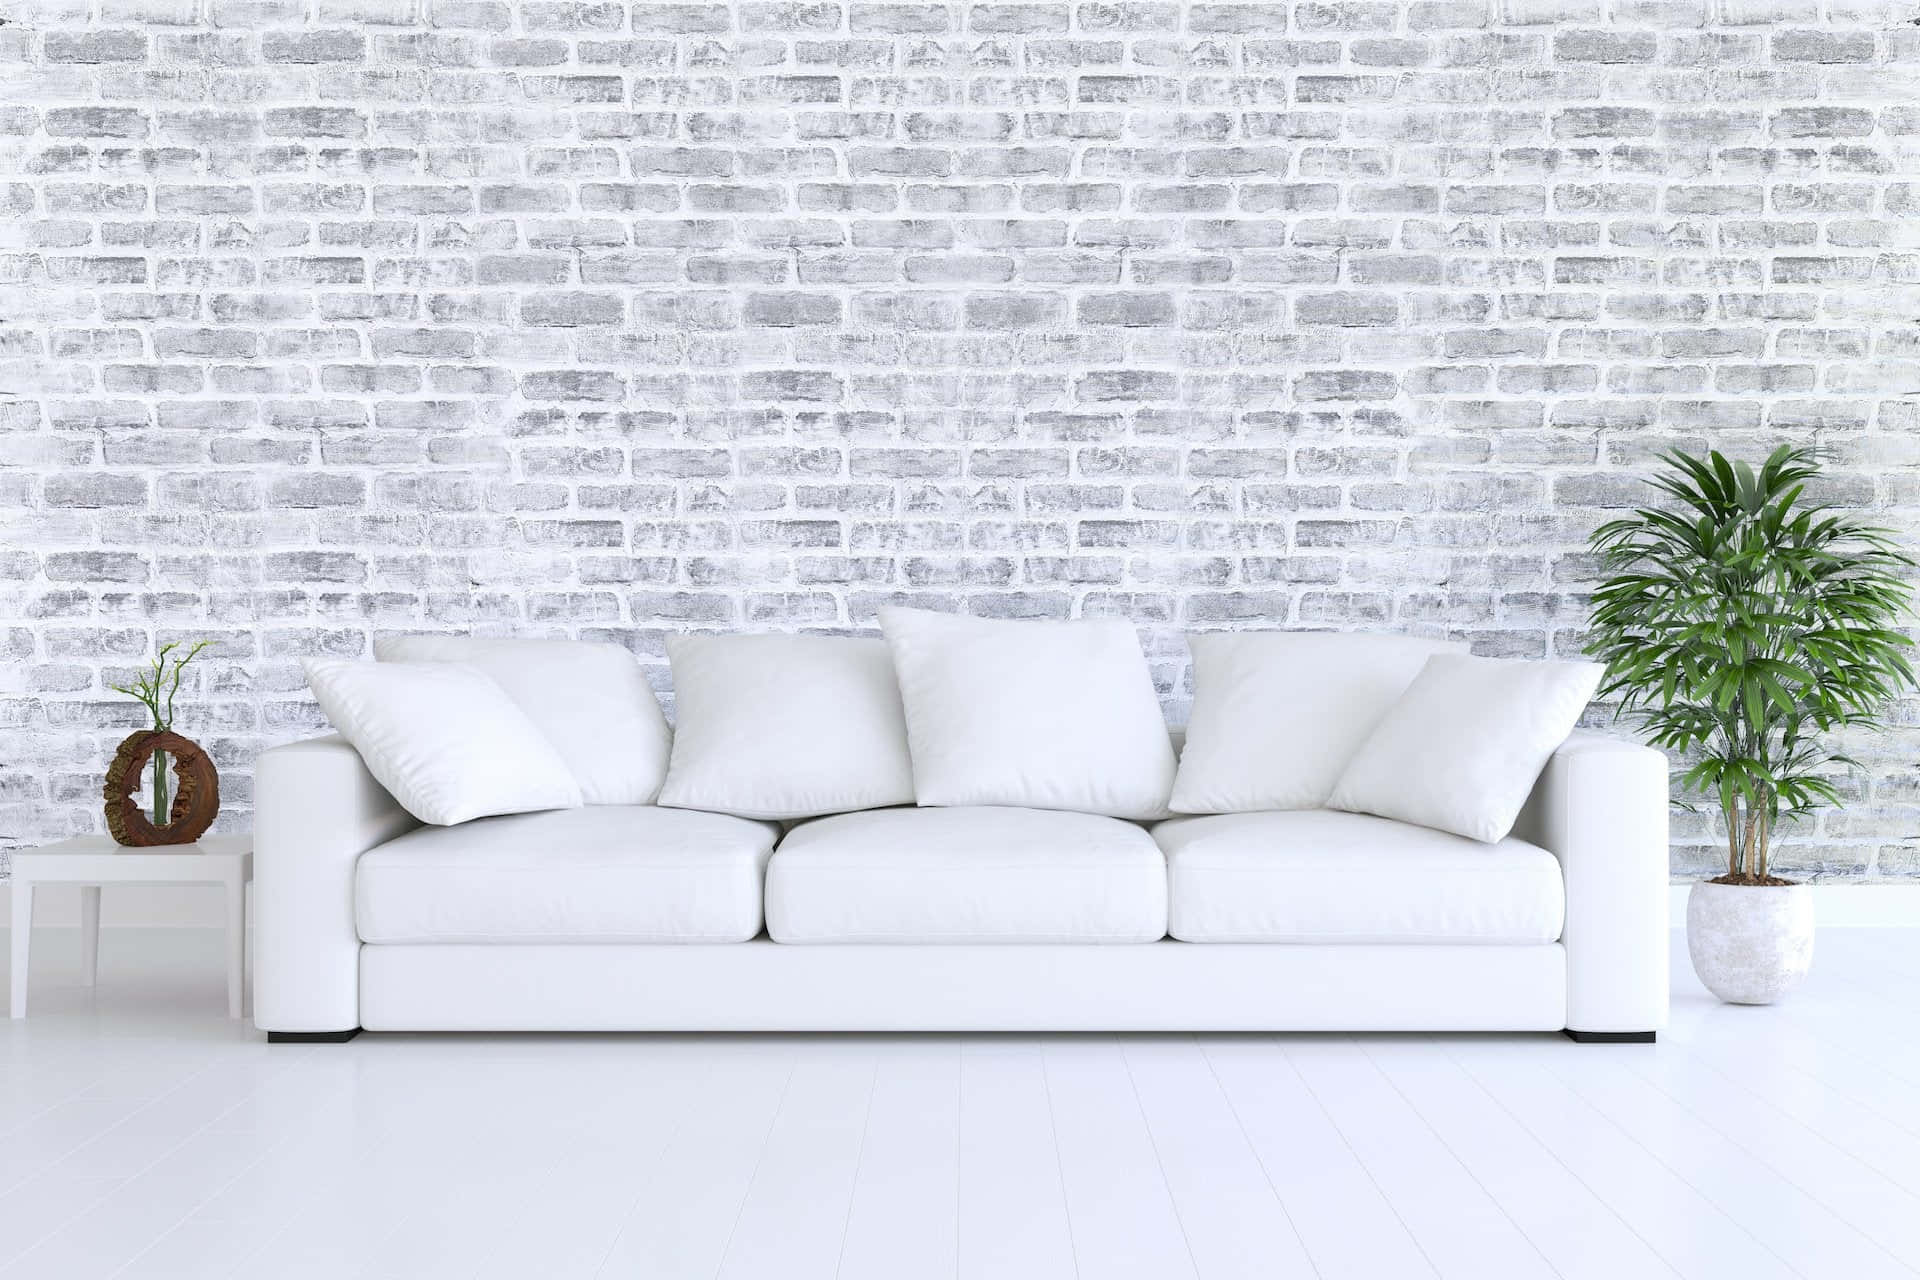 Hvid Sofa Foran En Mur Af Mursten